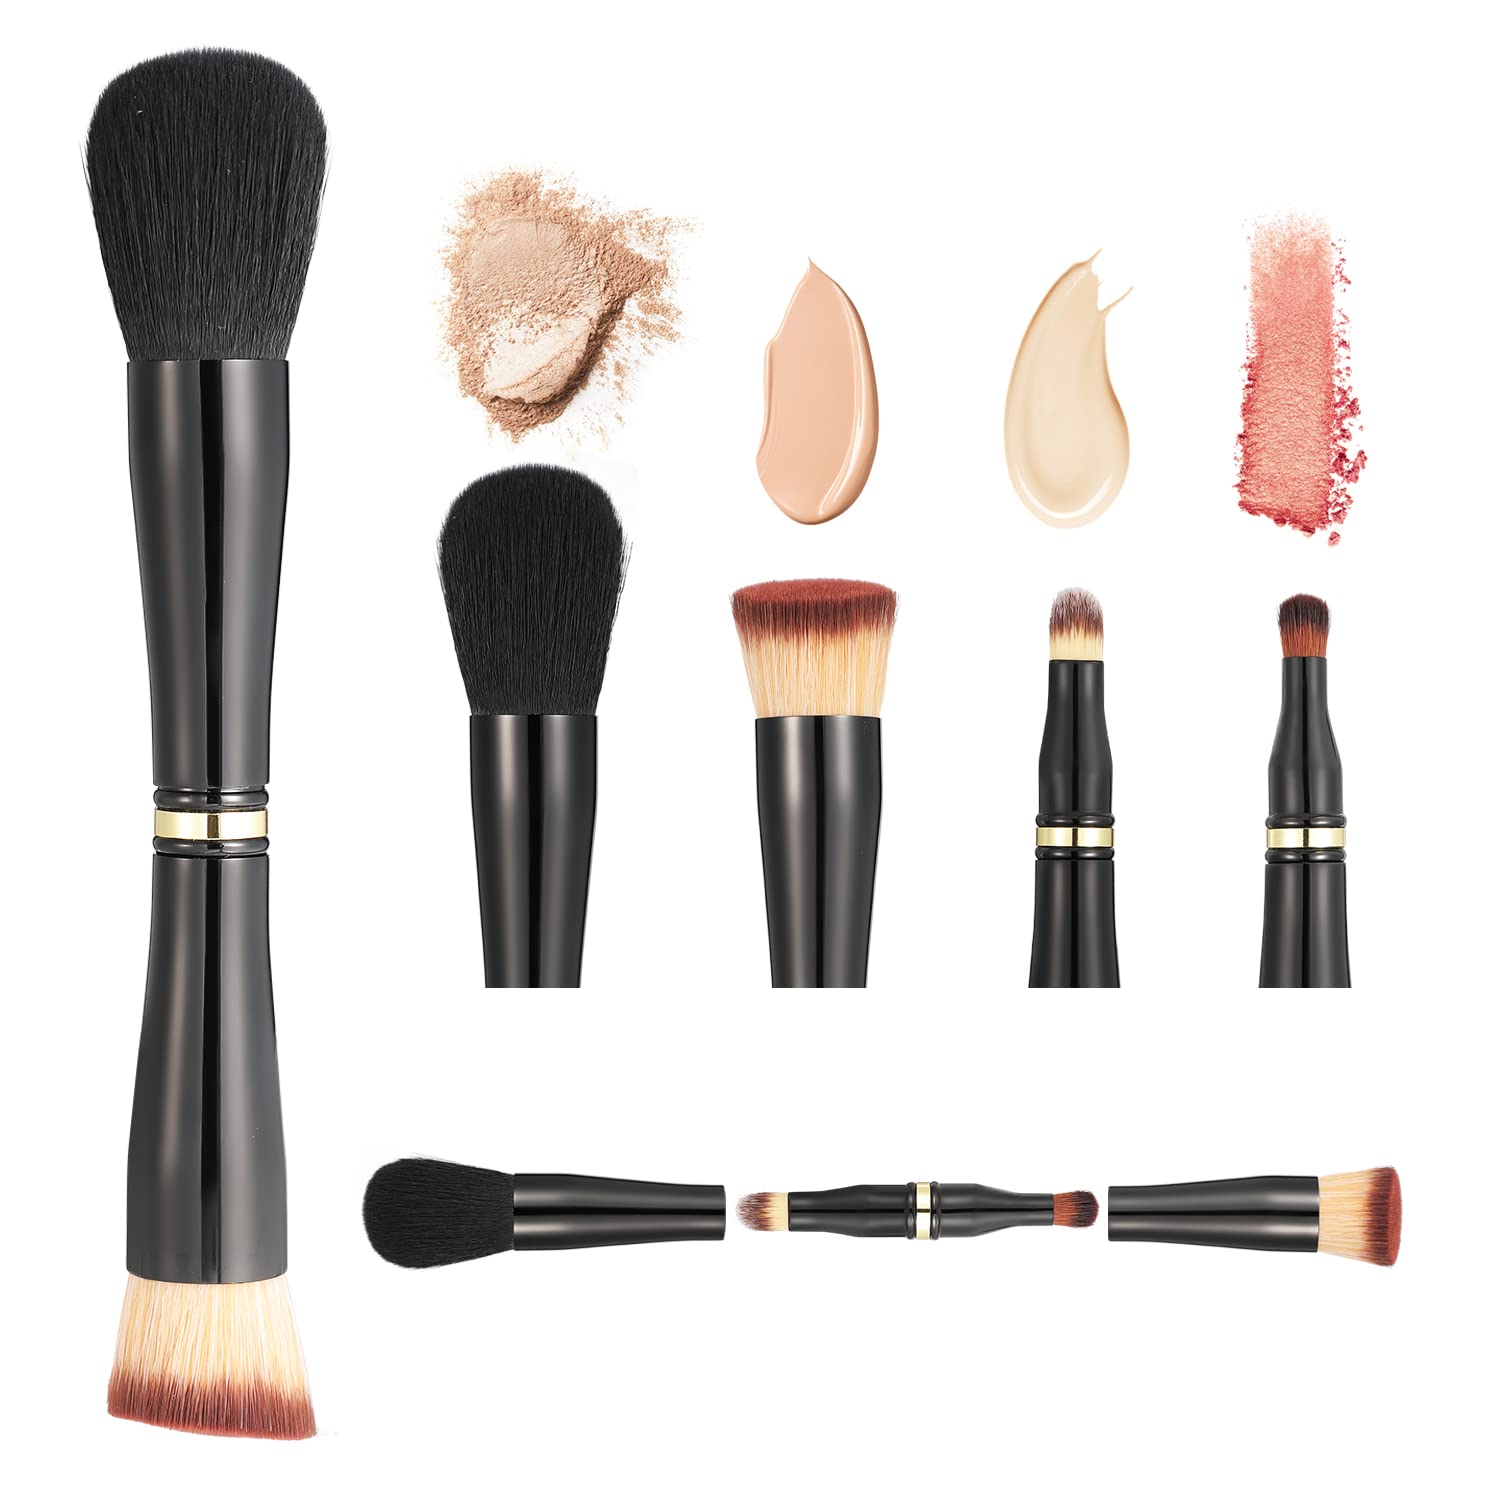 2pcs/set Big size Powder Makeup brushes + Flame Foundation brush